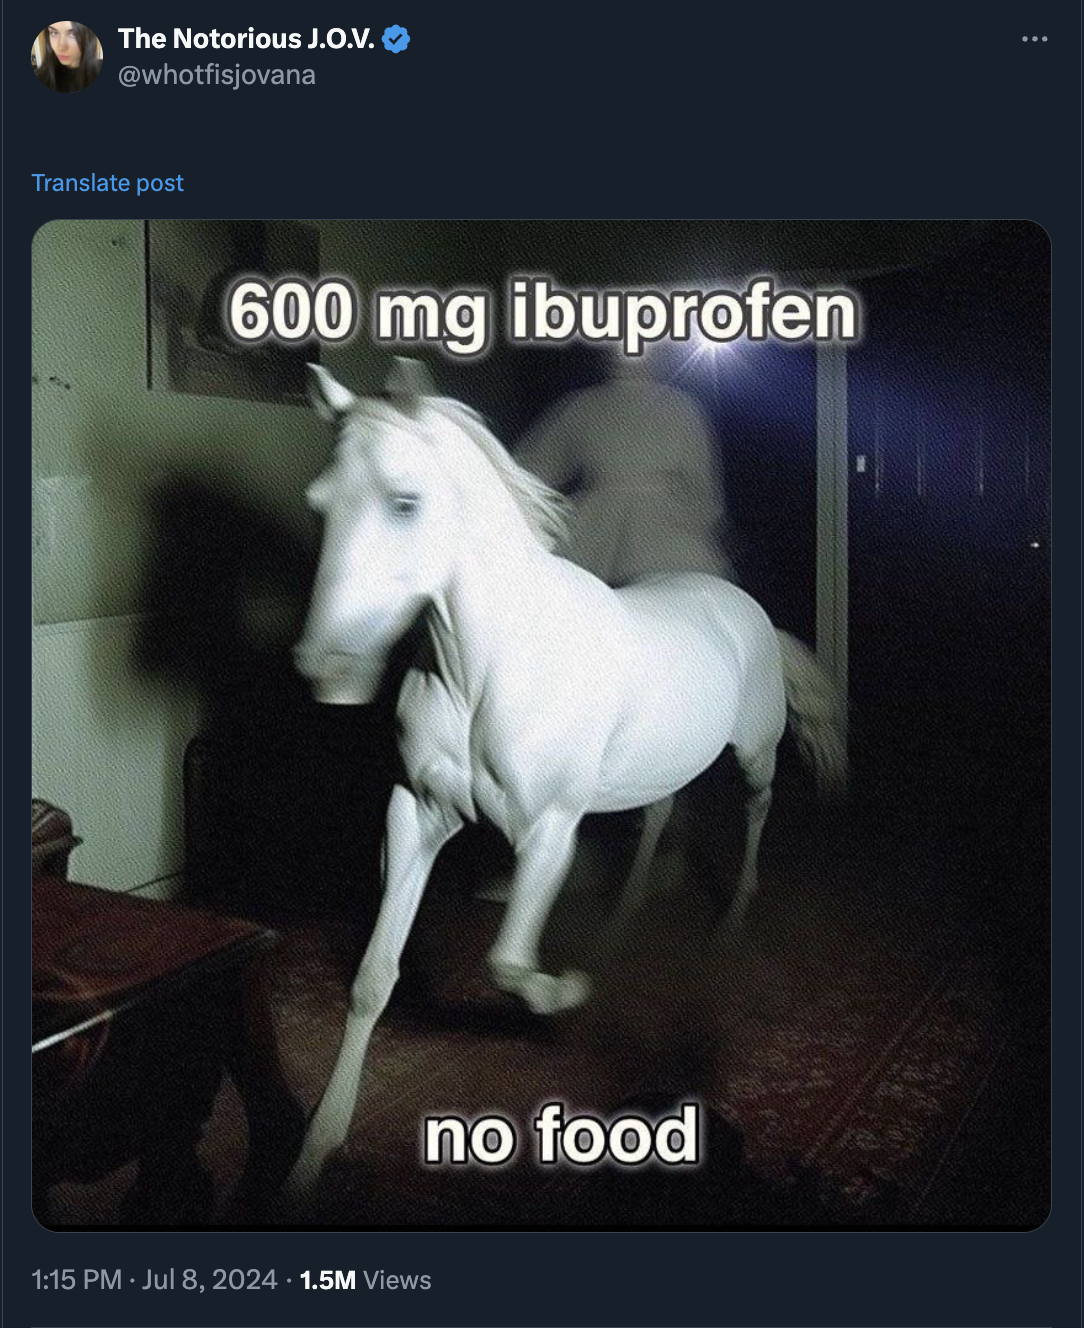 600mg ibuprofen no food - The Notorious J.O.V. Translate post 600 mg ibuprofen 1.5M Views no food